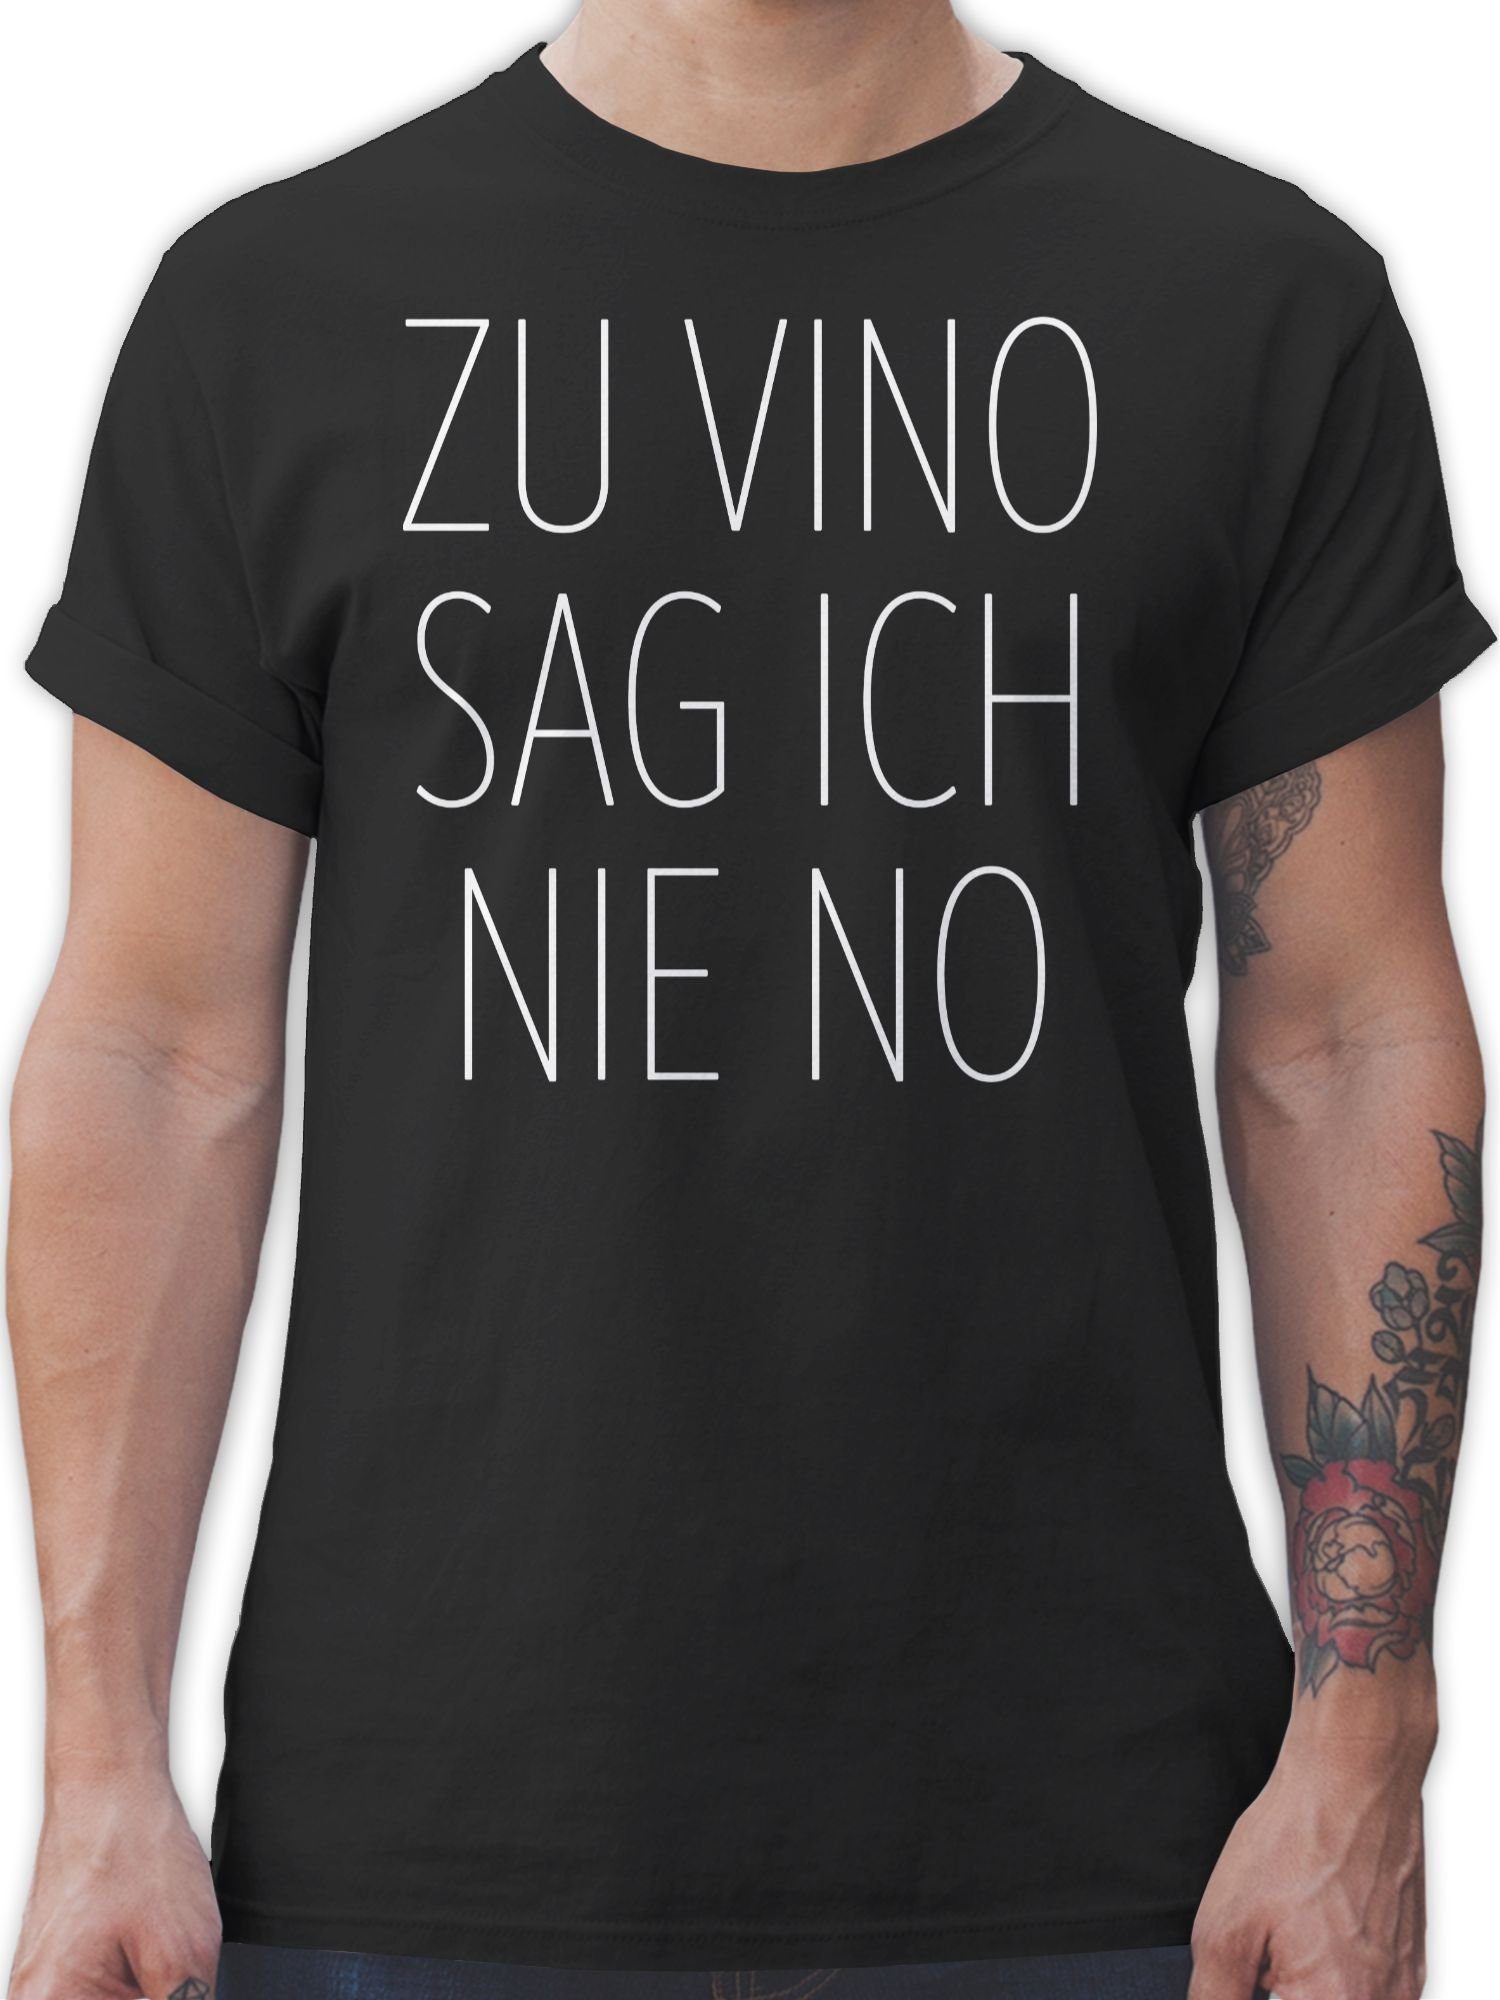 ich 01 Spruch Vino T-Shirt Zu nie Statement mit Sprüche Shirtracer Schwarz sag No weiß